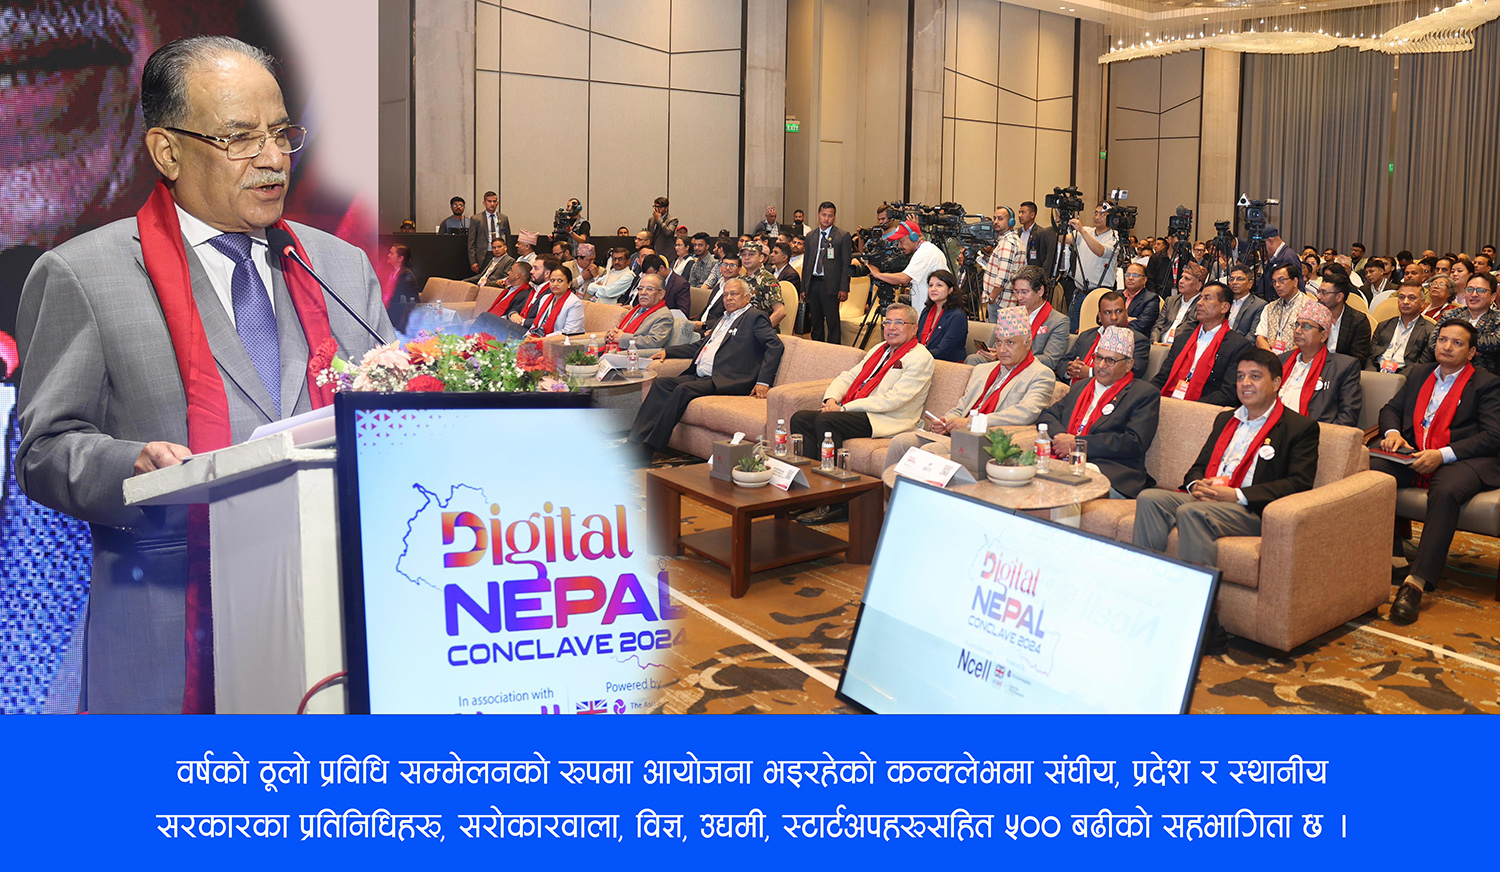 सुरू भयो डिजिटल नेपाल कन्क्लेभ २०२४, डिजिटल रूपान्तरणबारे बृहत् छलफल हुँदै